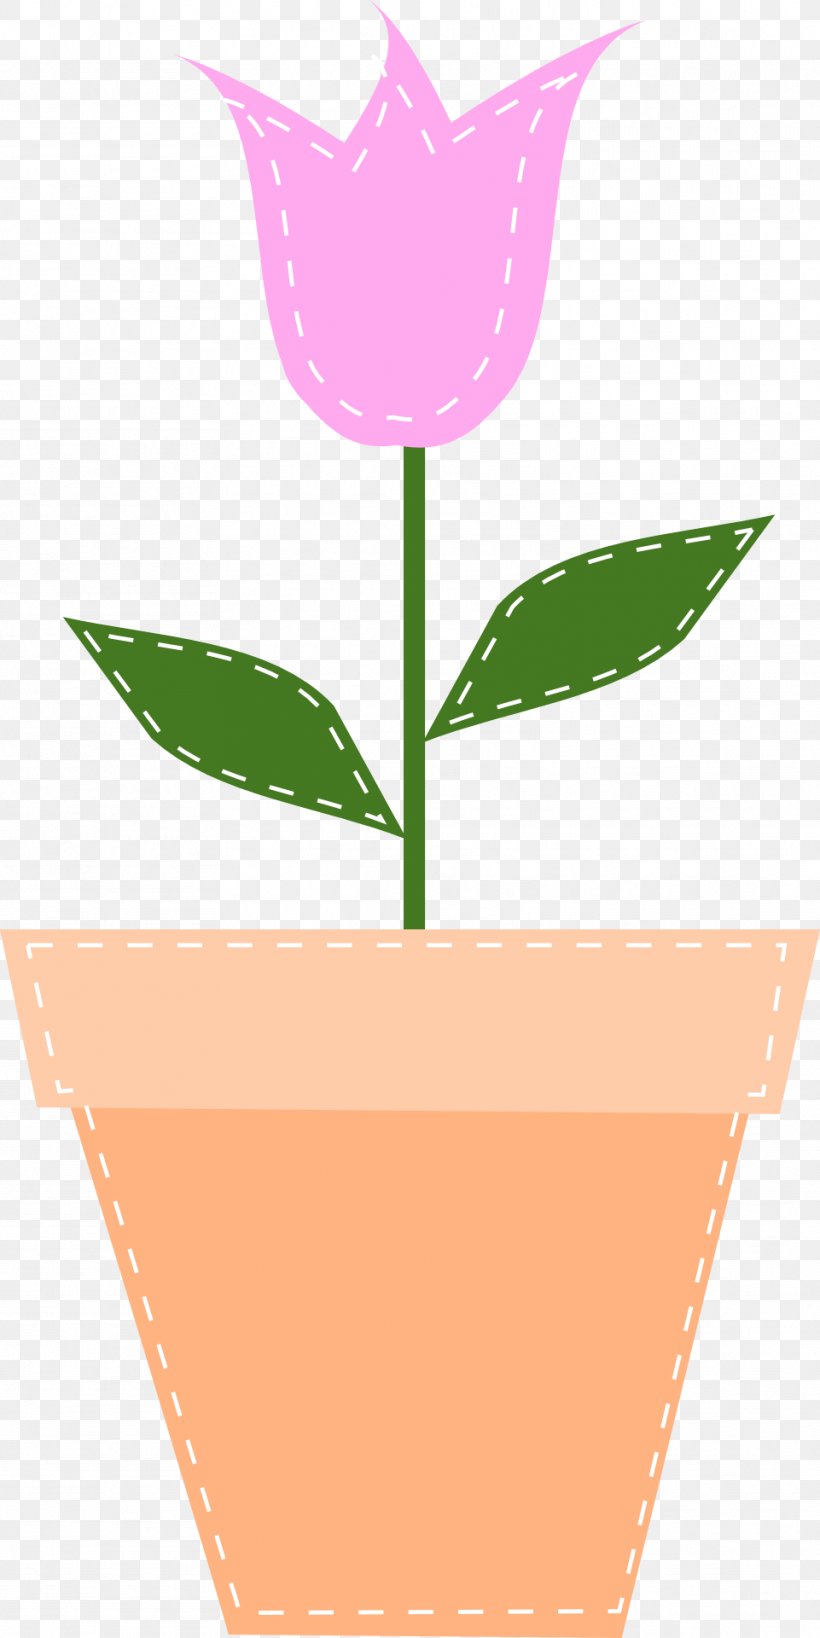 Flowerpot Pink Flowers Clip Art, PNG, 961x1920px, Flowerpot, Flower, Flowering Plant, Leaf, Pink Flowers Download Free